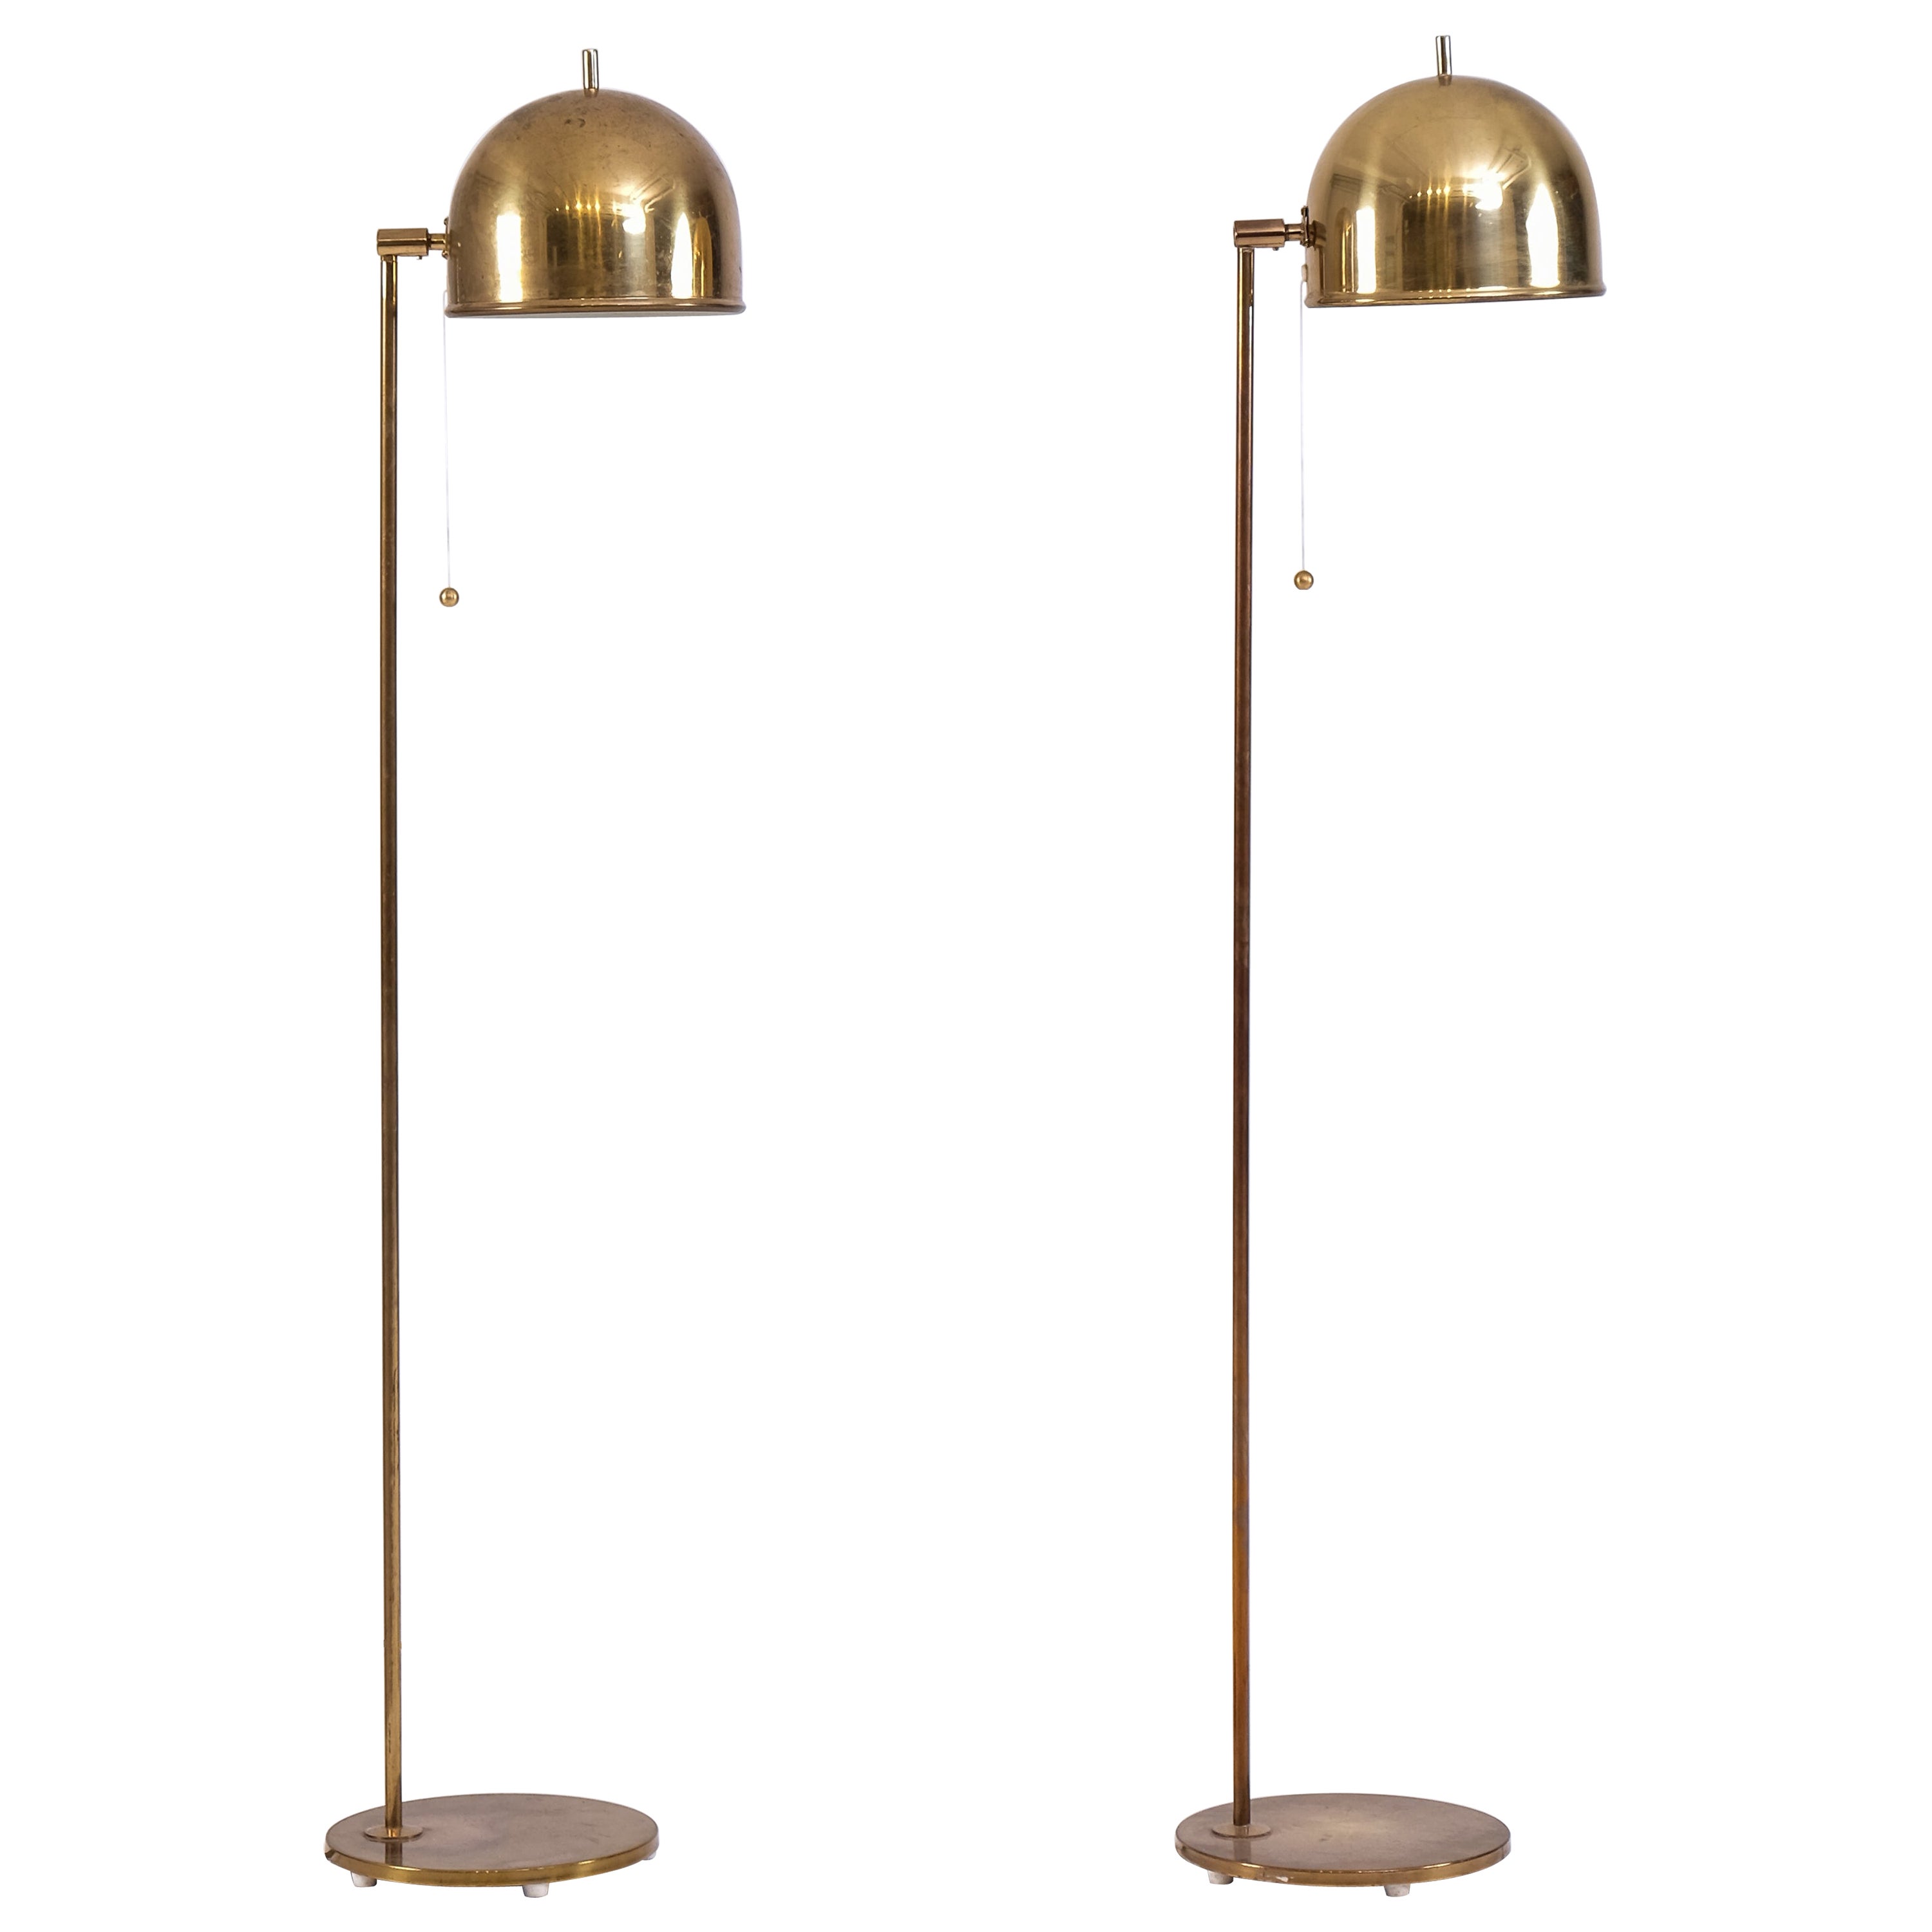 Pair of Brass Floor Lamps Model G-075, Bergboms, Sweden, 1960s